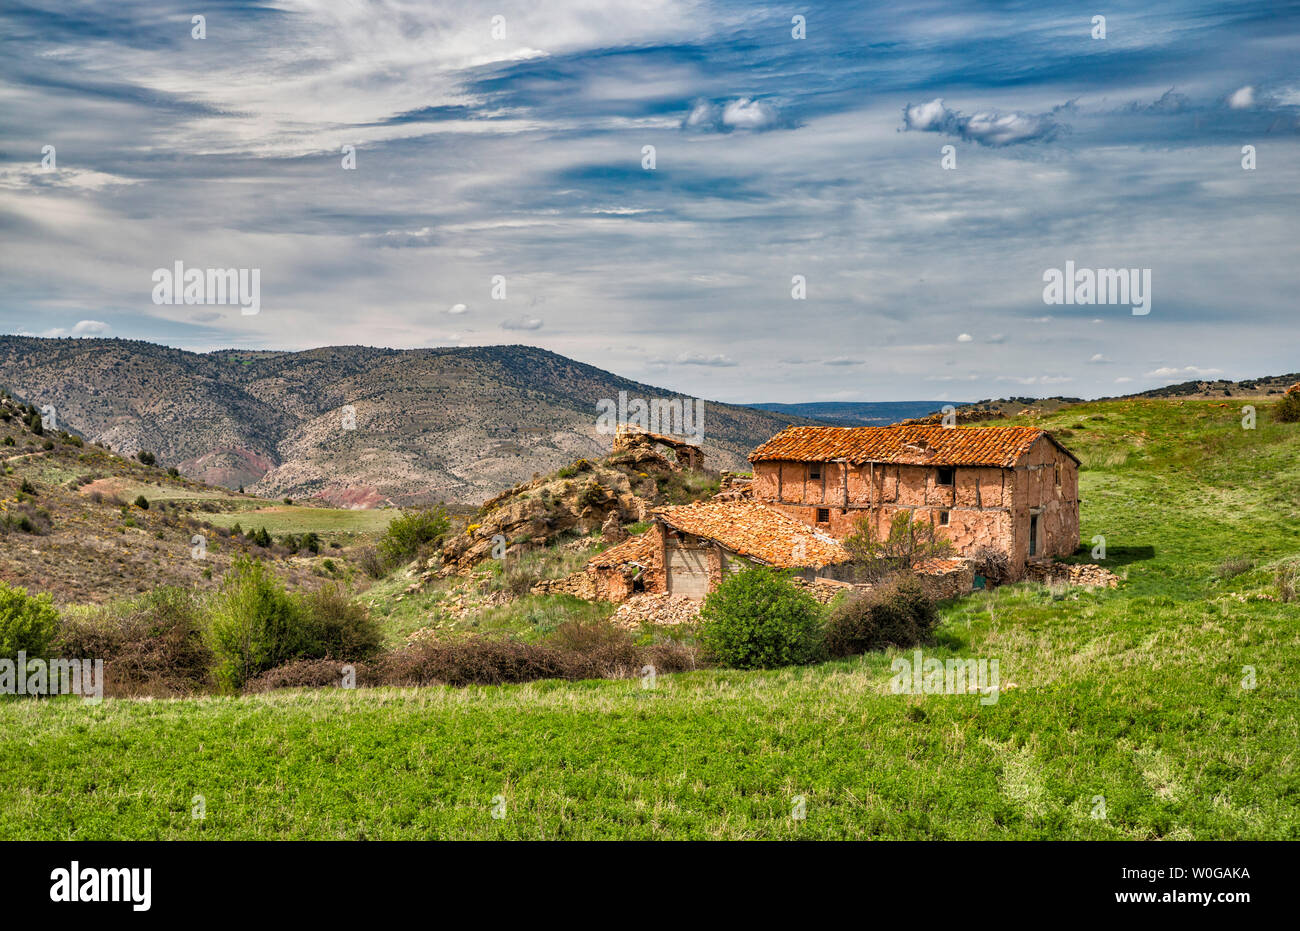 Los edificios de la granja vieja en la Sierra de Albarracín, cerca de Albarracín, provincia de Teruel, Aragón, España Foto de stock